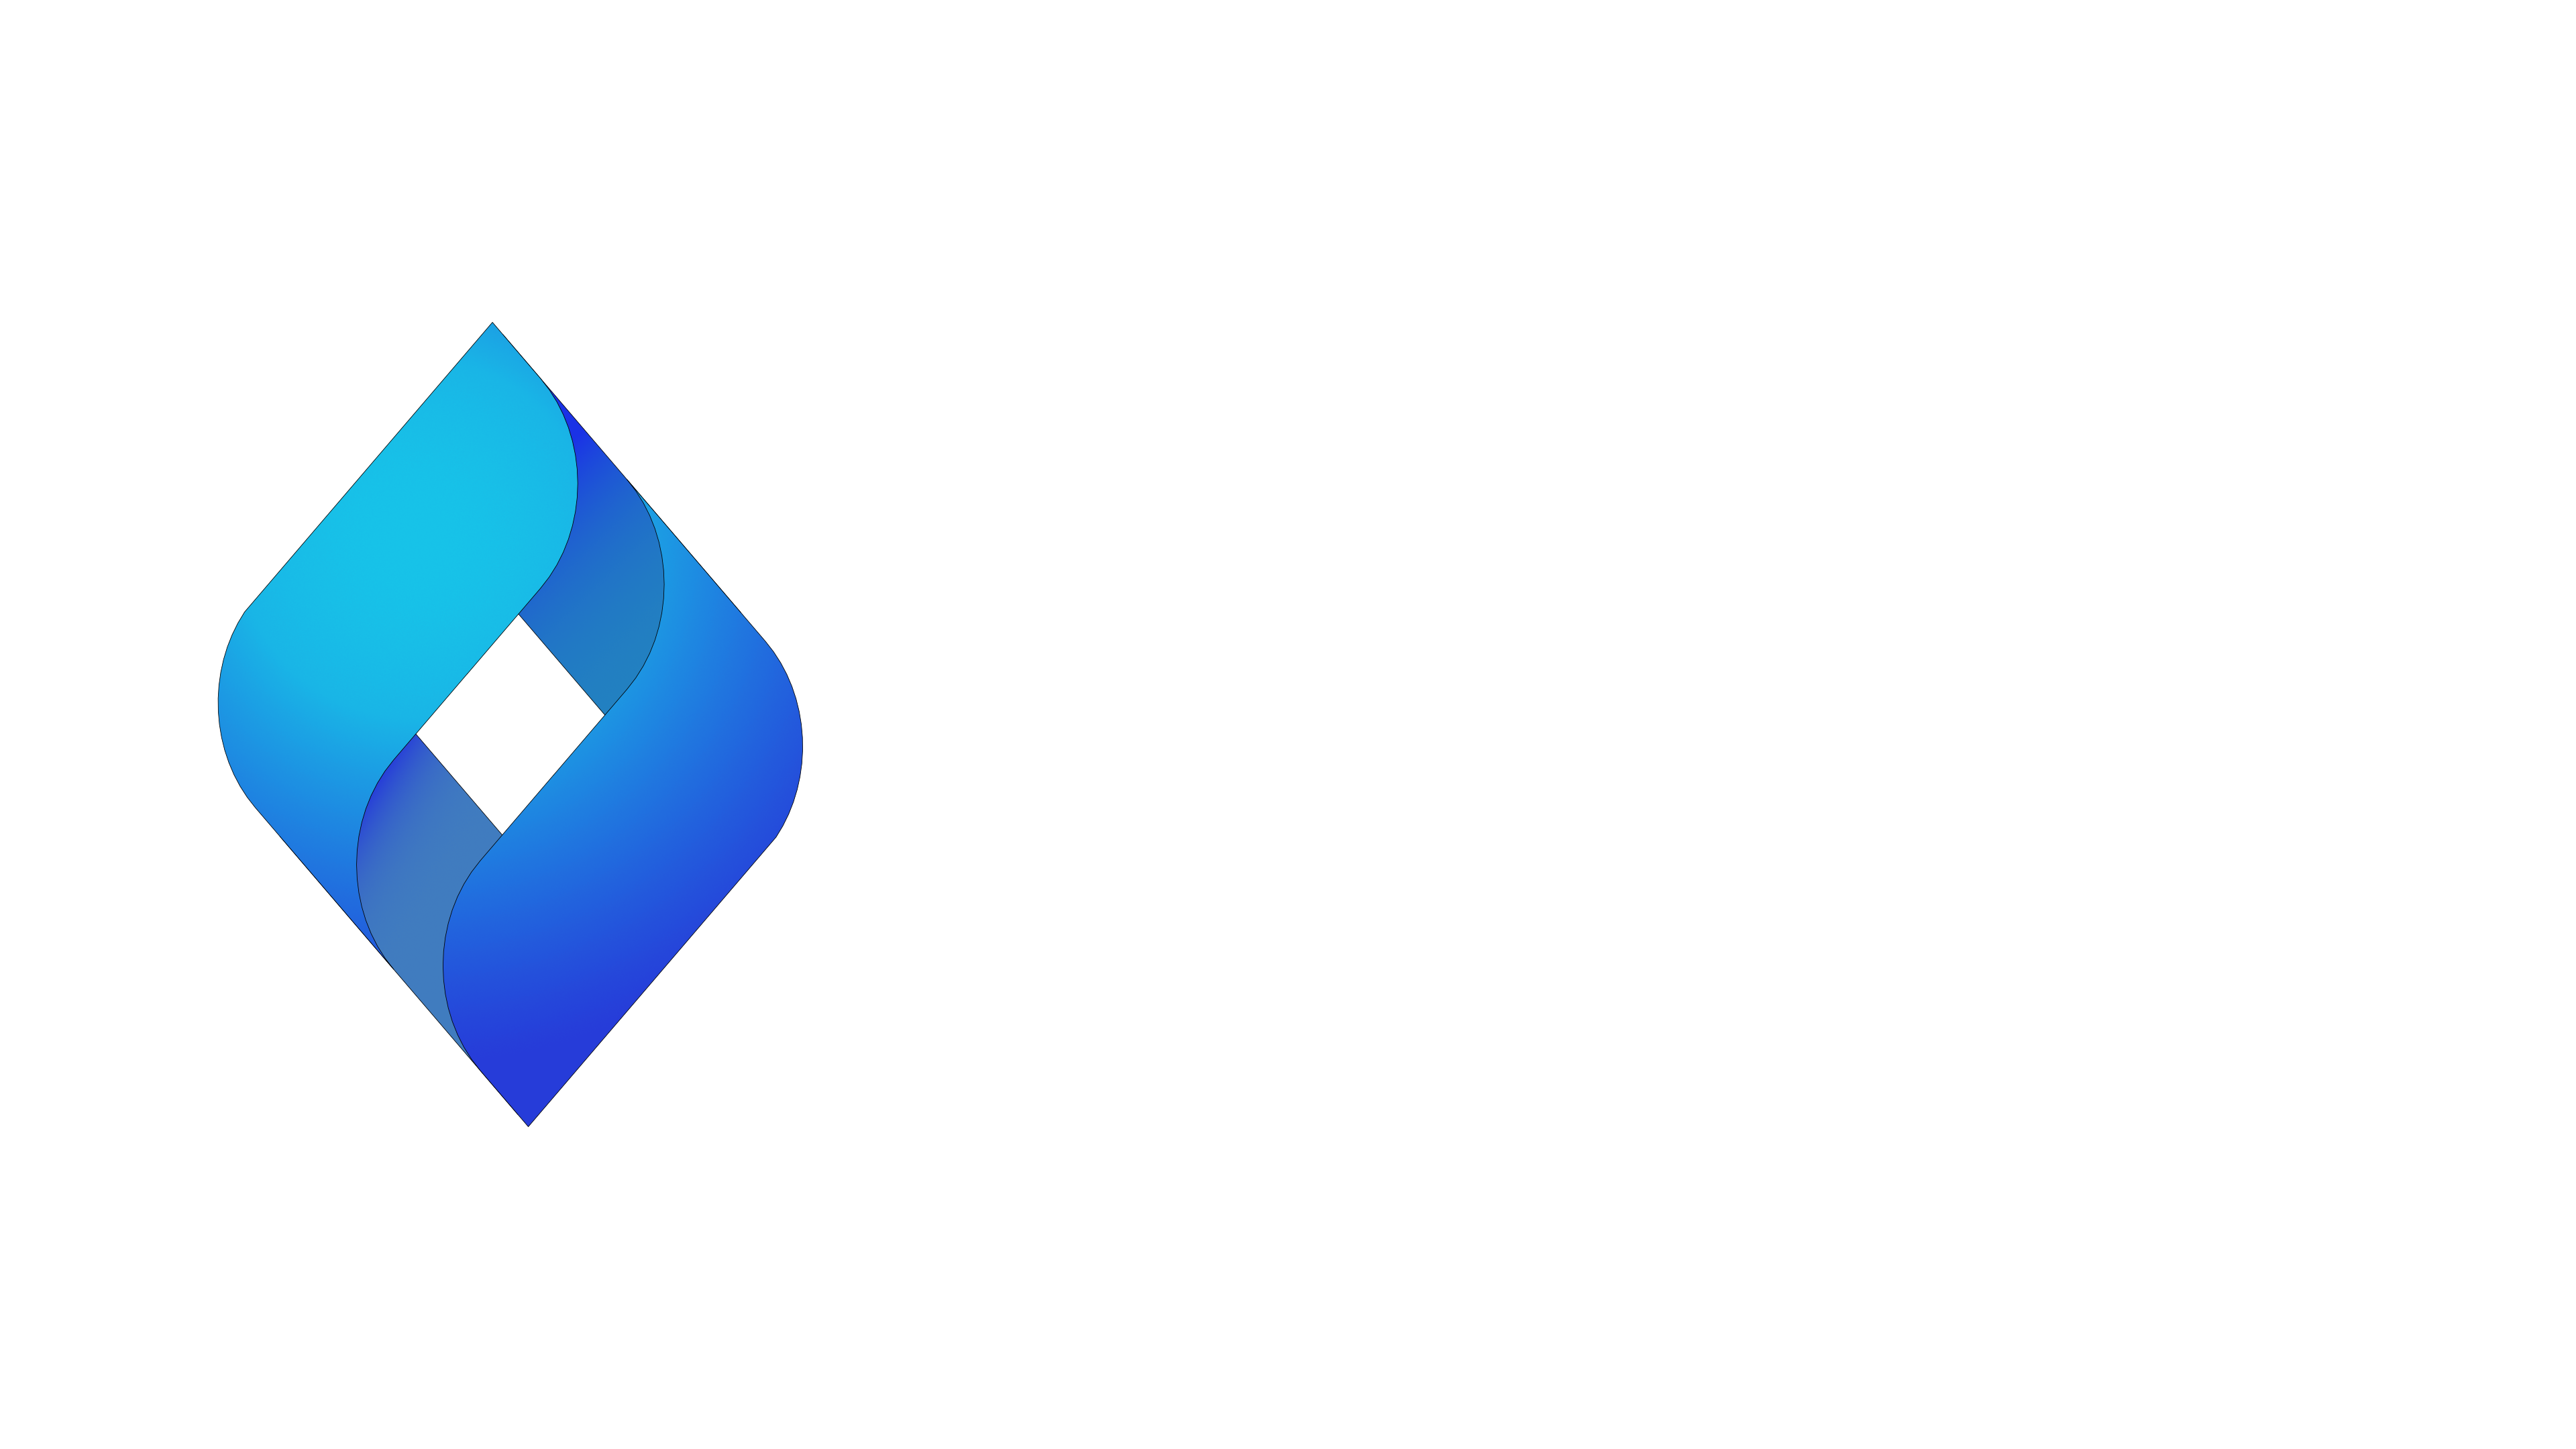 IP ready, vit text på sidan, ingen bakgrund